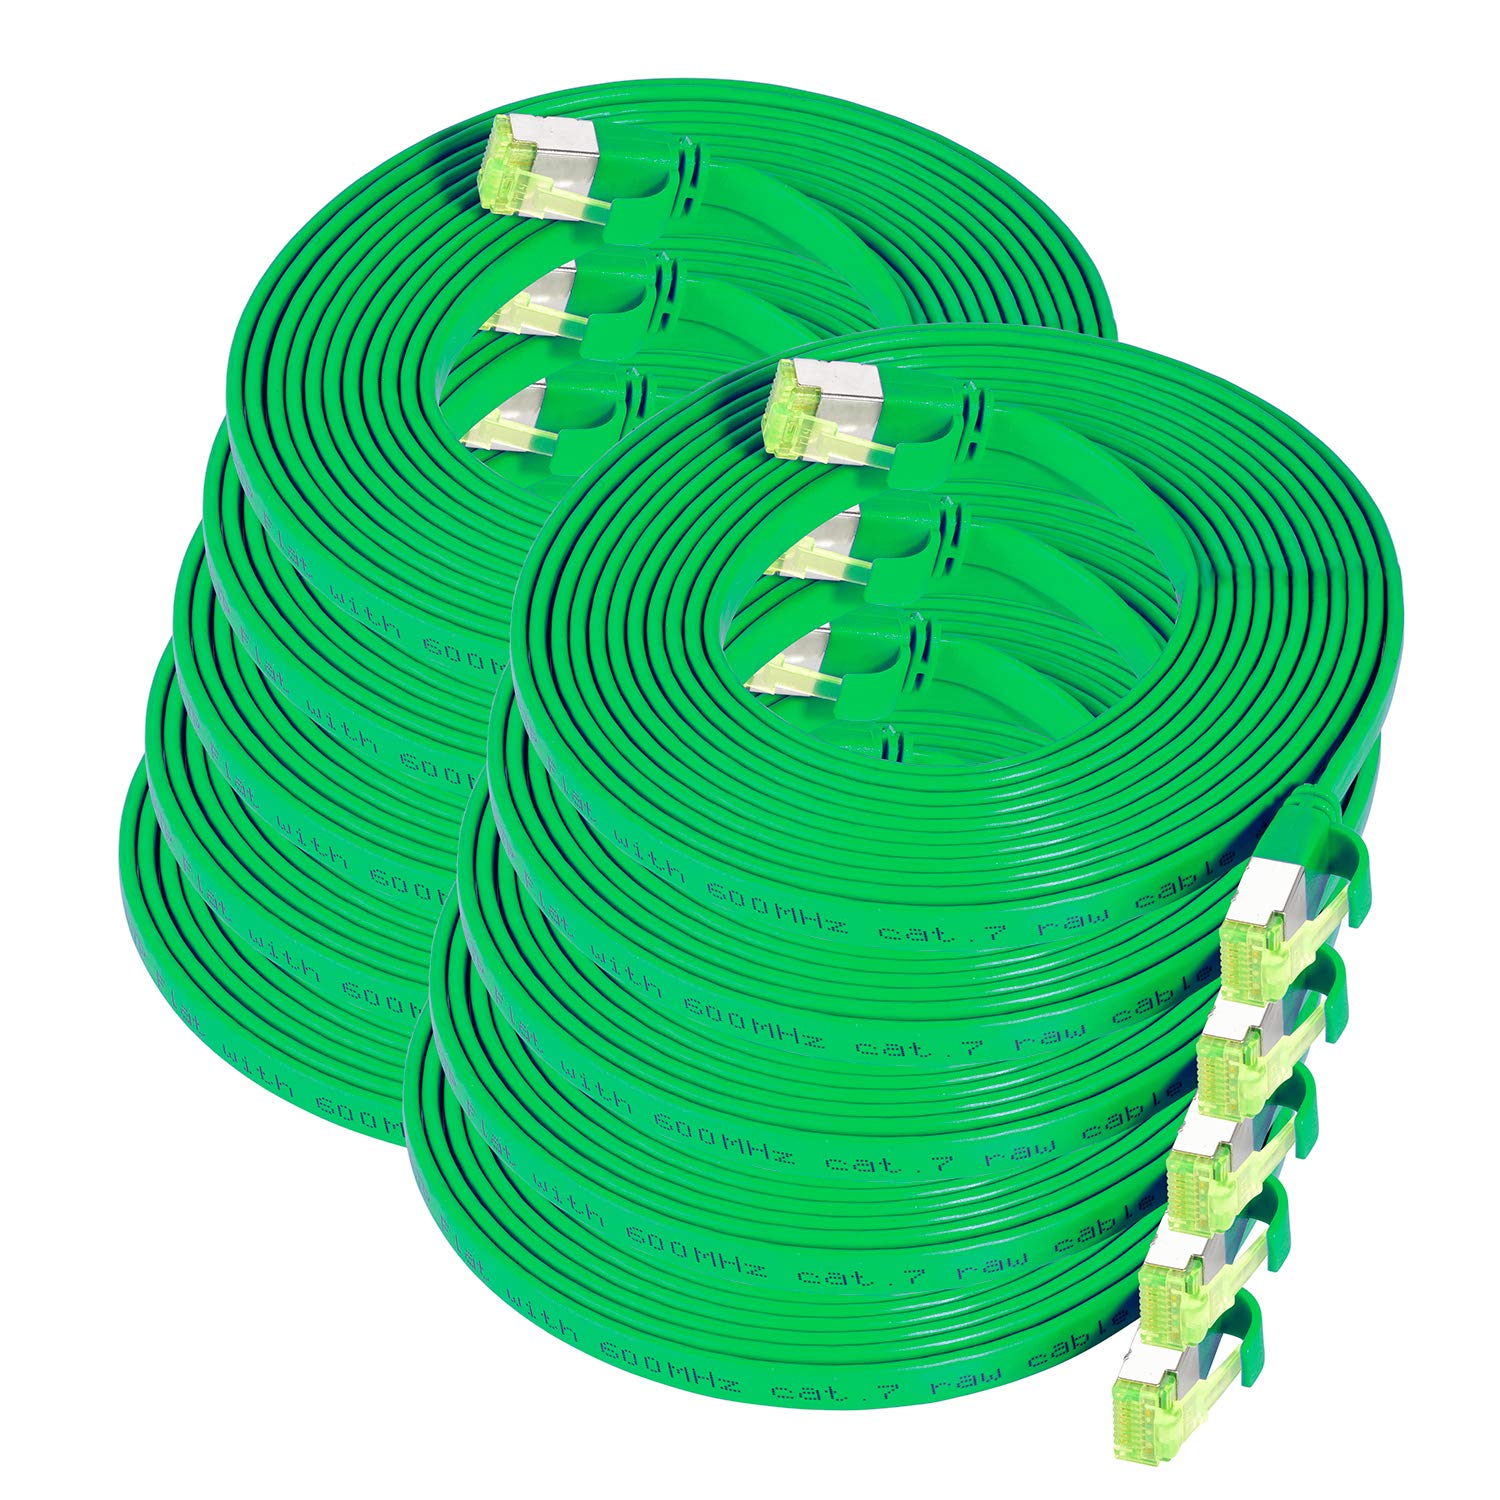 TPFNet 10er Pack CAT.7 hochwertiges Premium Netzwerkkabel flach mit RJ45 Anschluss | LAN Kabel | 3m | grün |Abschirmung durch U/FTP | kompatibel mit Router, Modem, Switch